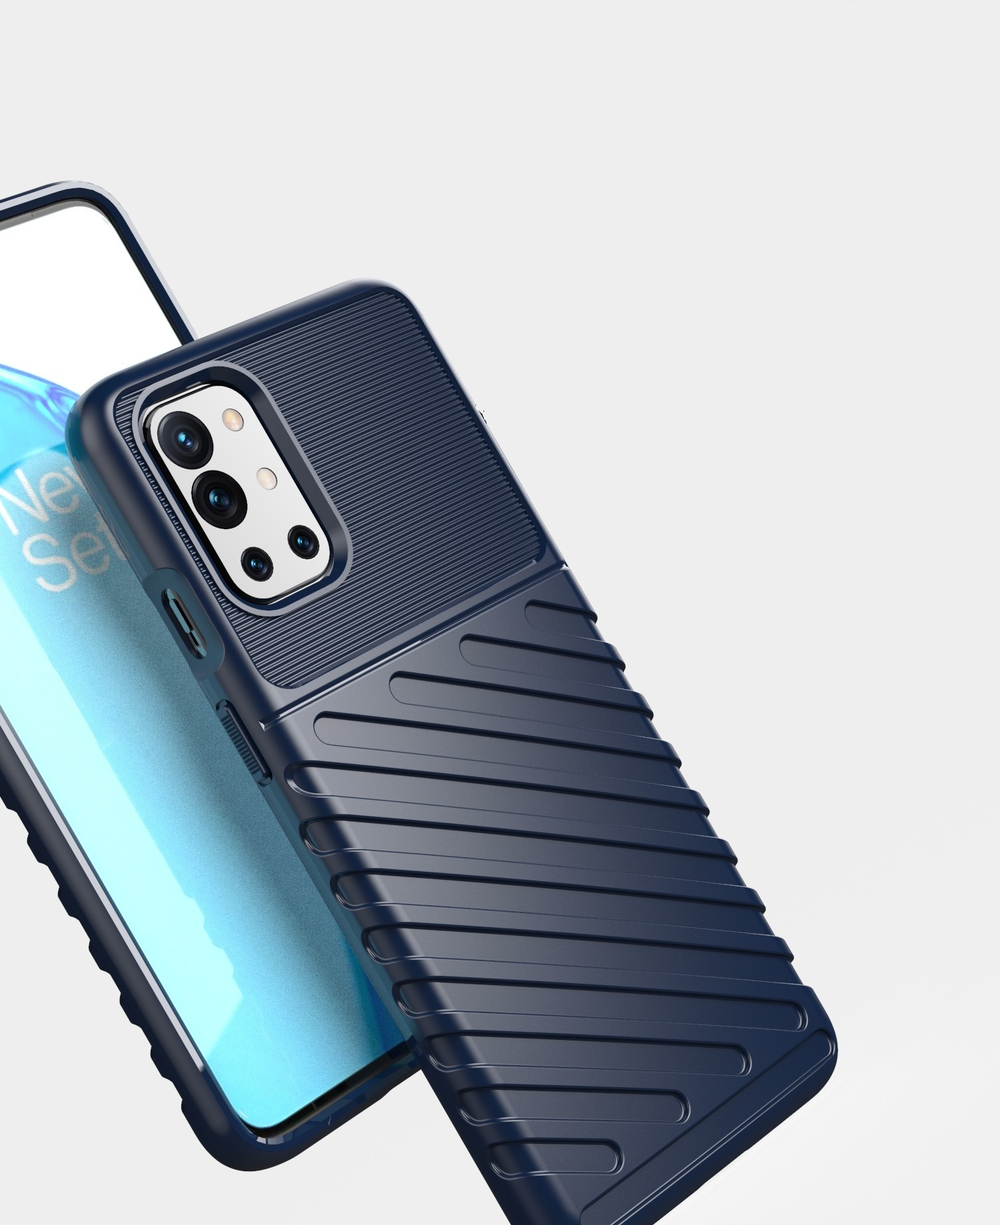 Ударопрочный защитный чехол синего цвета на OnePlus 9R, серия Onyx от Caseport